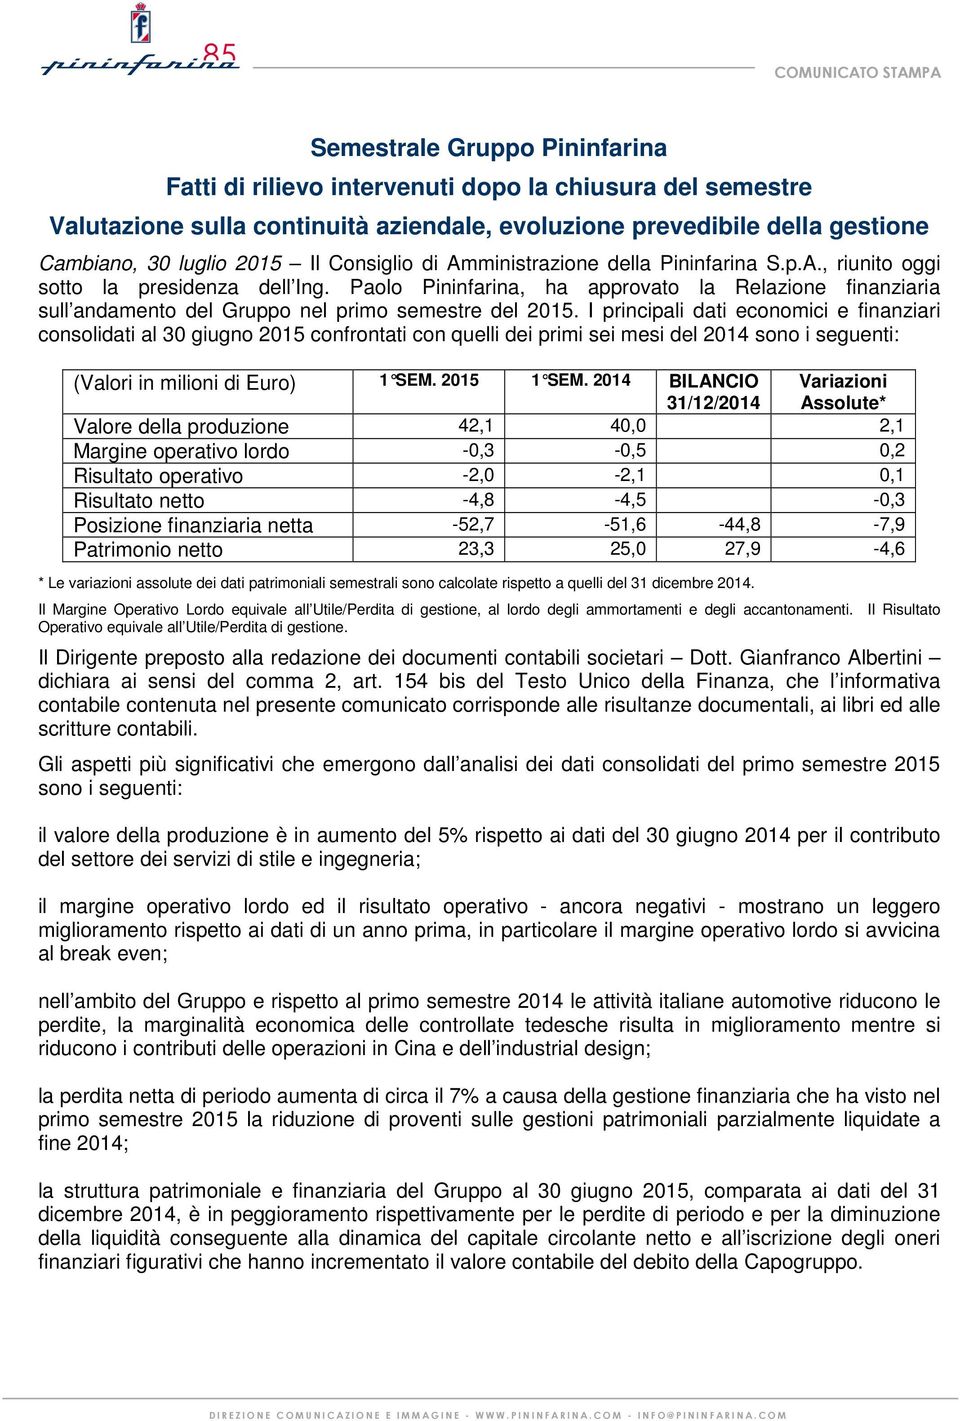 Paolo Pininfarina, ha approvato la Relazione finanziaria sull andamento del Gruppo nel primo semestre del 2015.